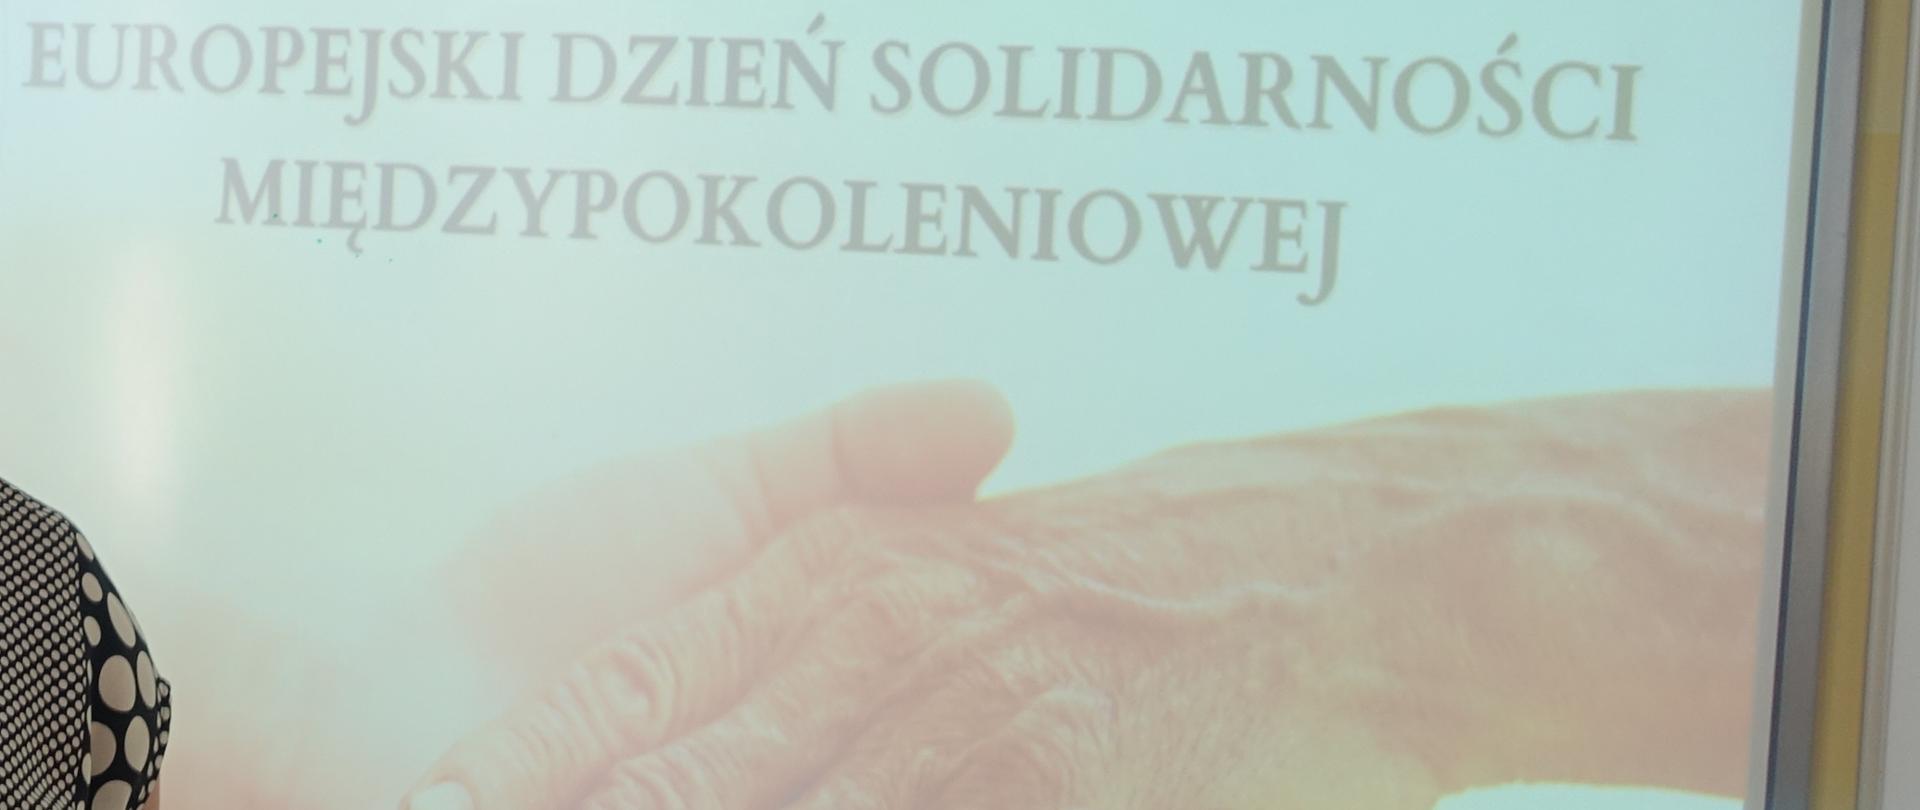 Prezentacja - Europejski Dzień Solidarności Międzypokoleniowej.